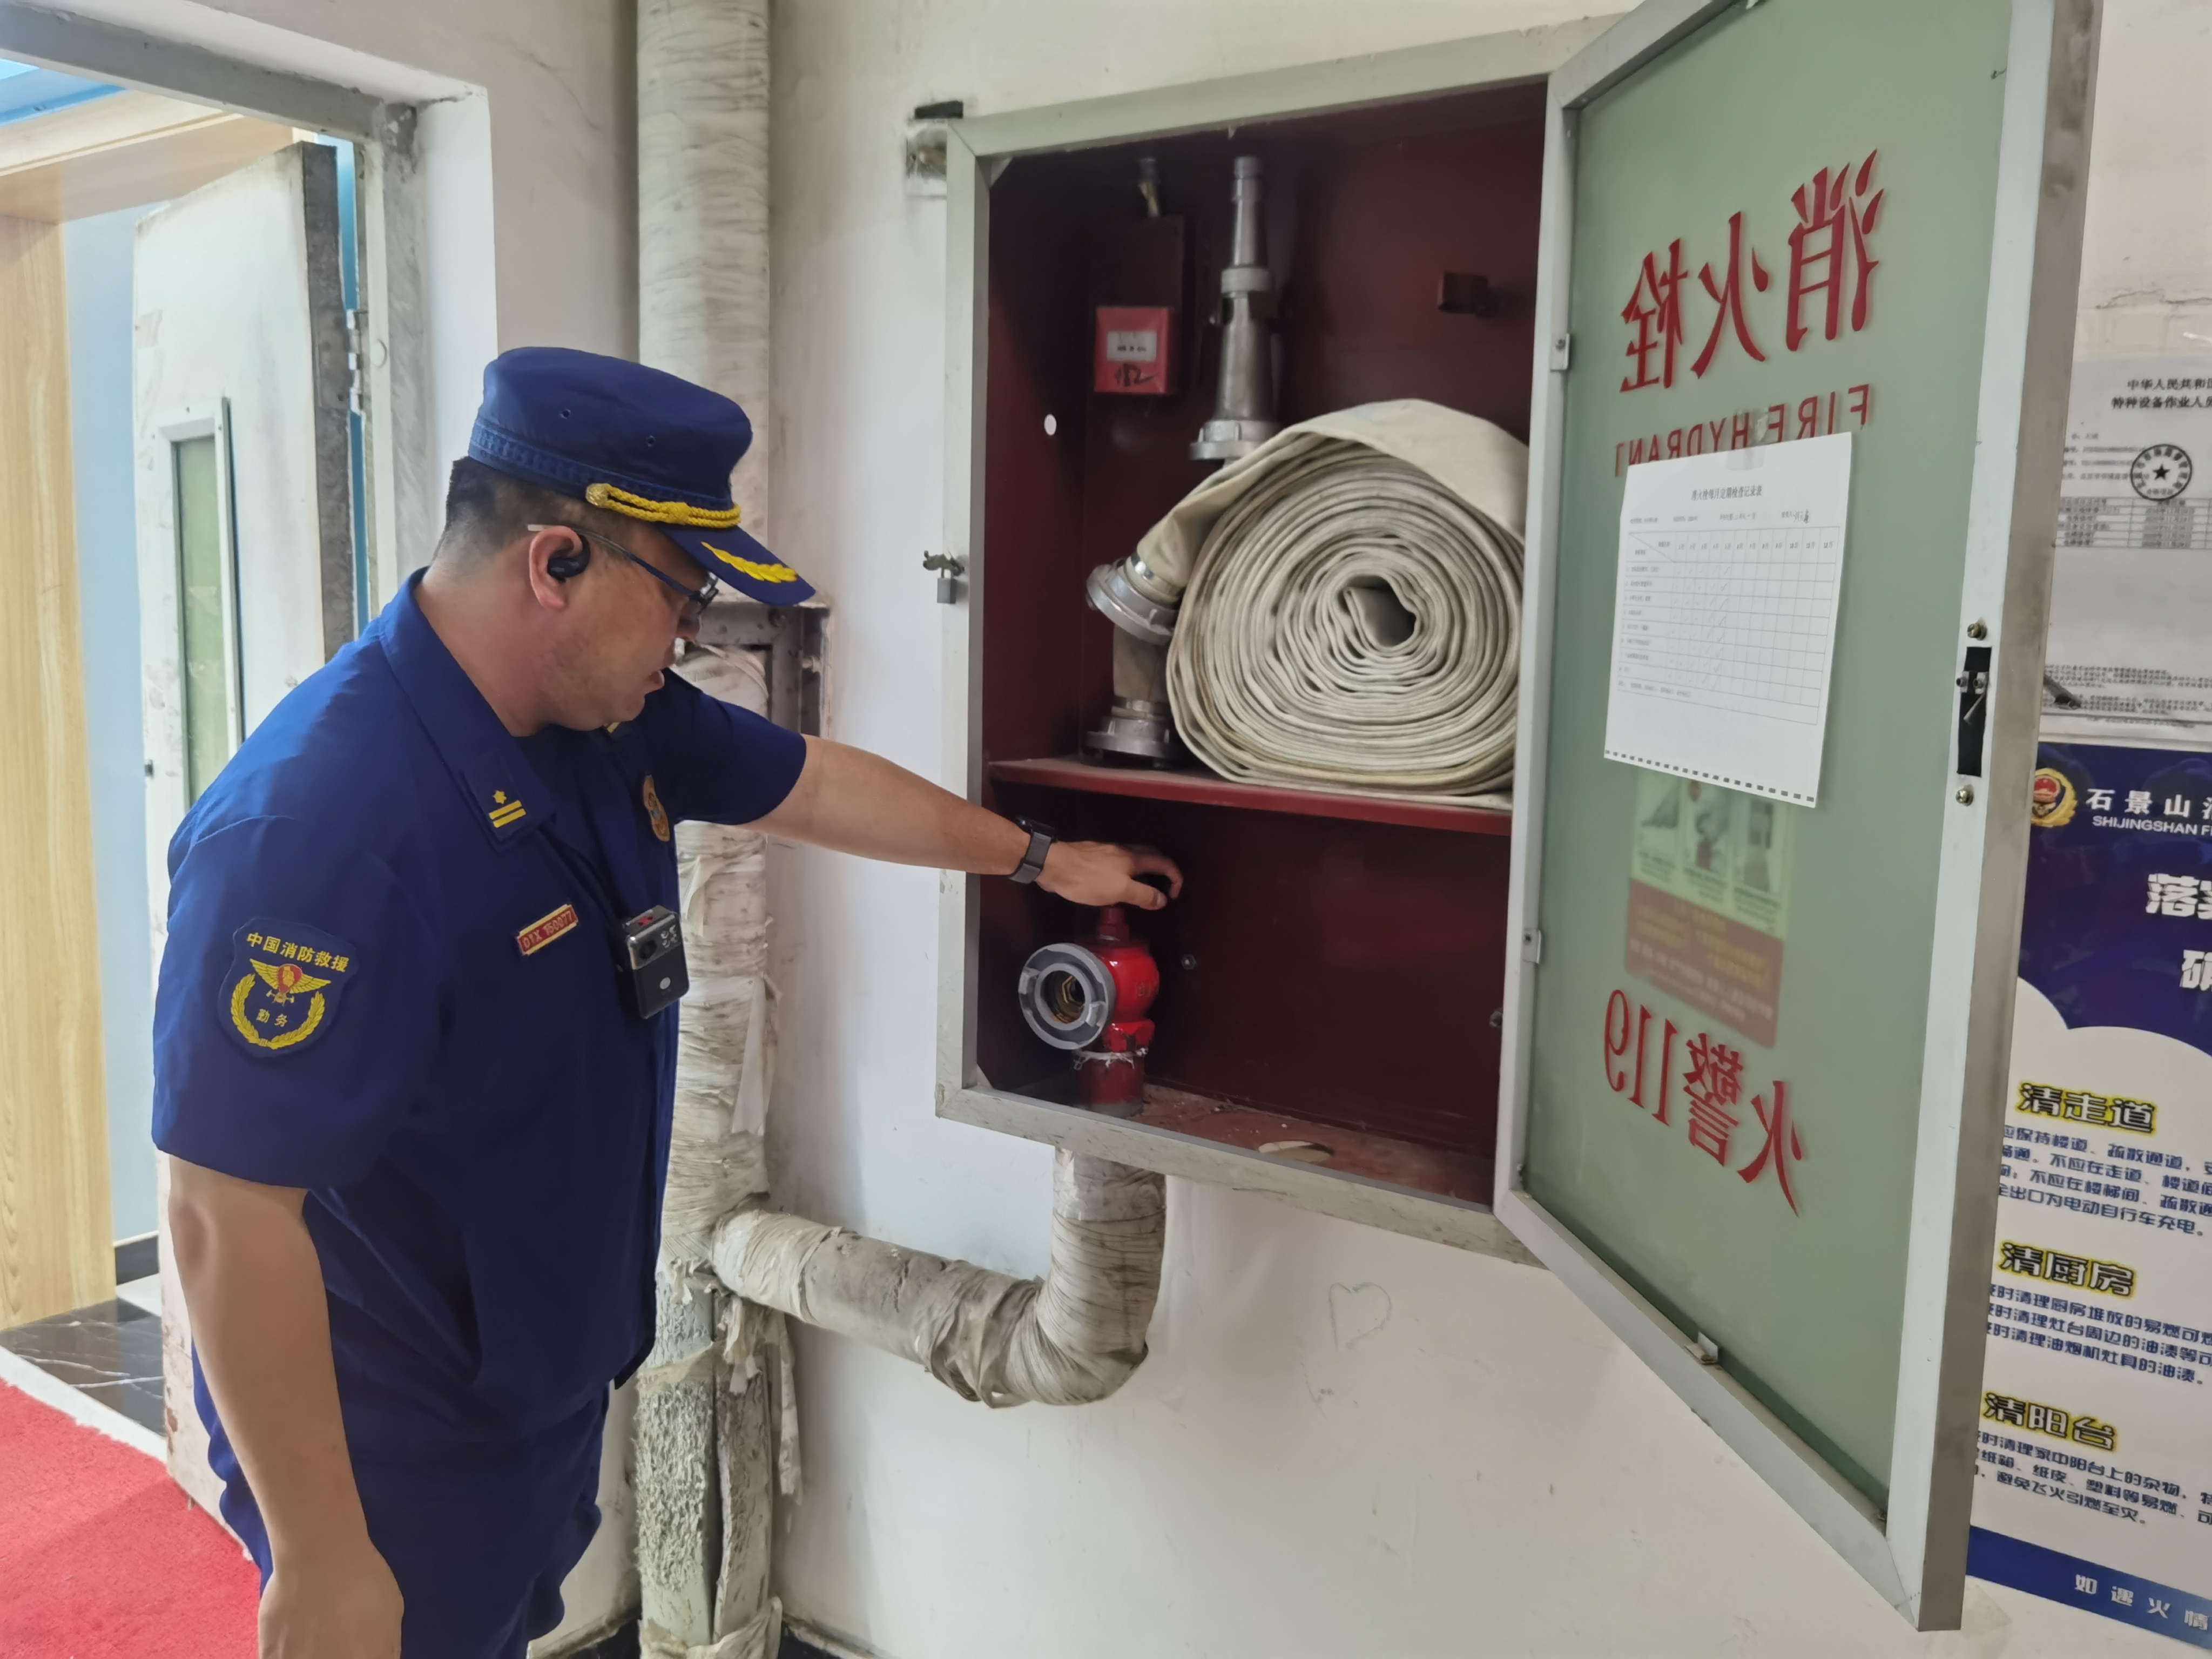 星空体育网站入口消防设备瘫痪如埋按时炸弹北京一小区消火栓无水被查(图1)